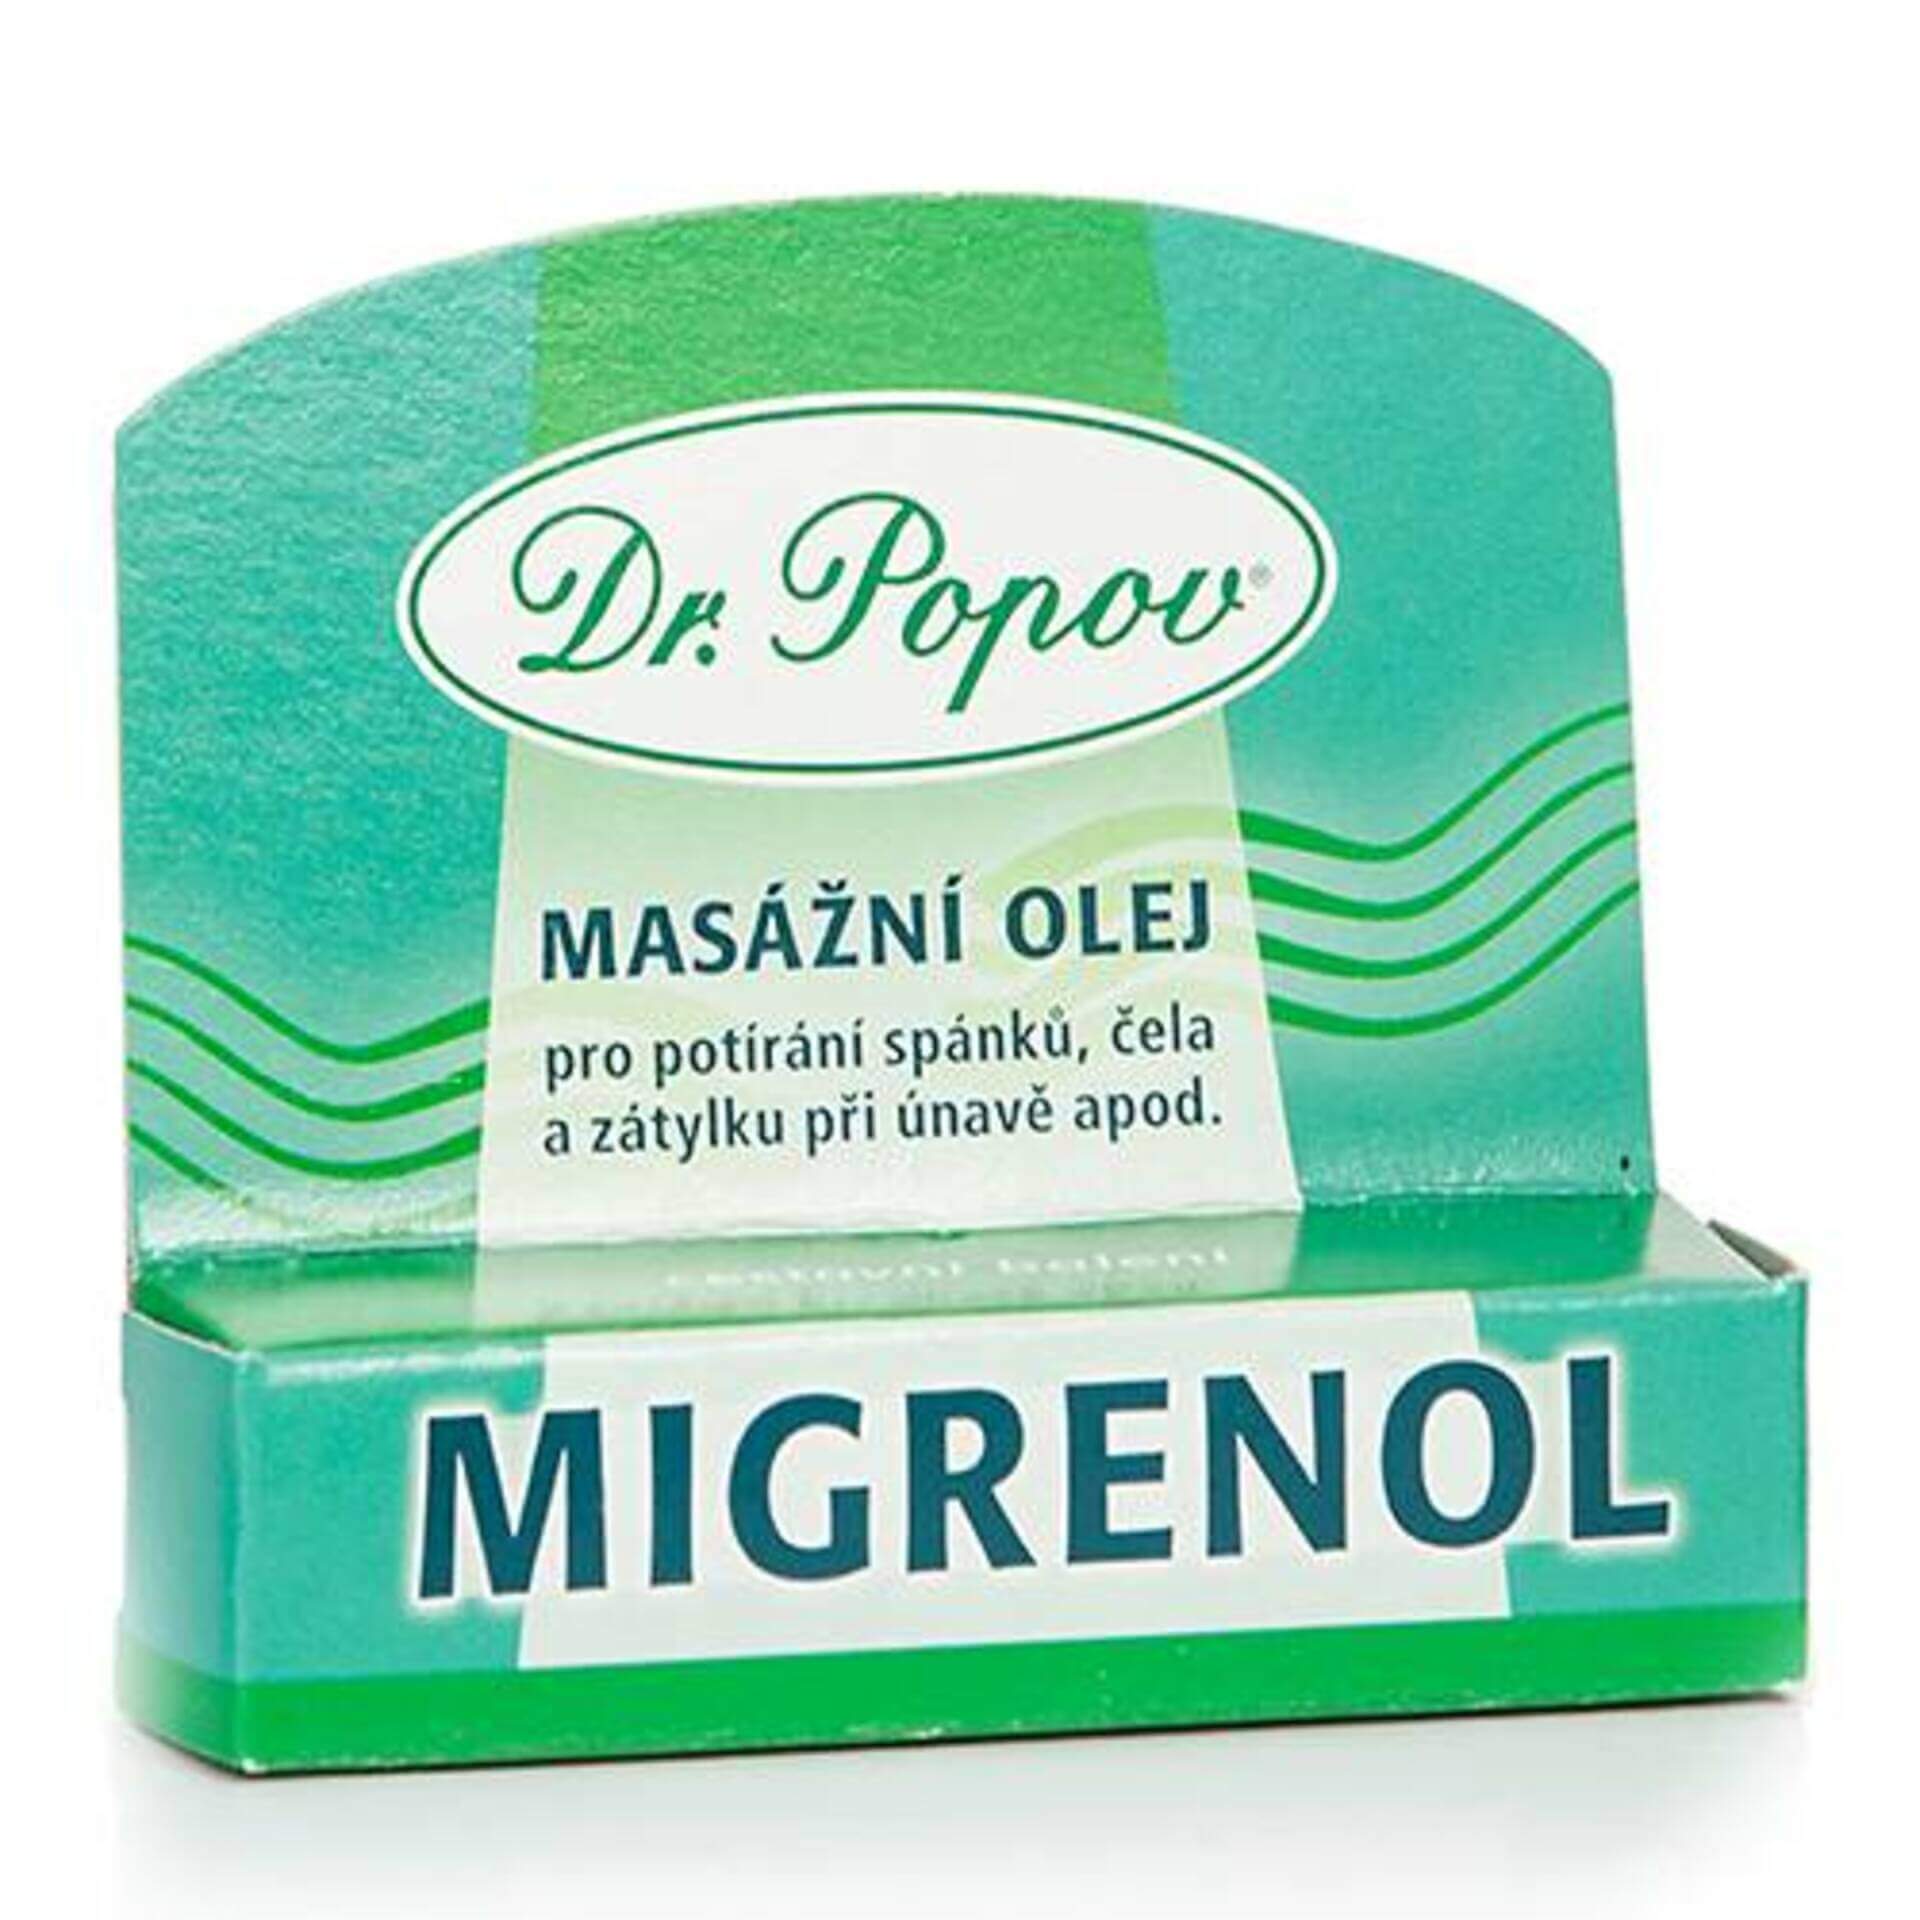 E-shop Dr. Popov Migrenol roll-on 6 ml